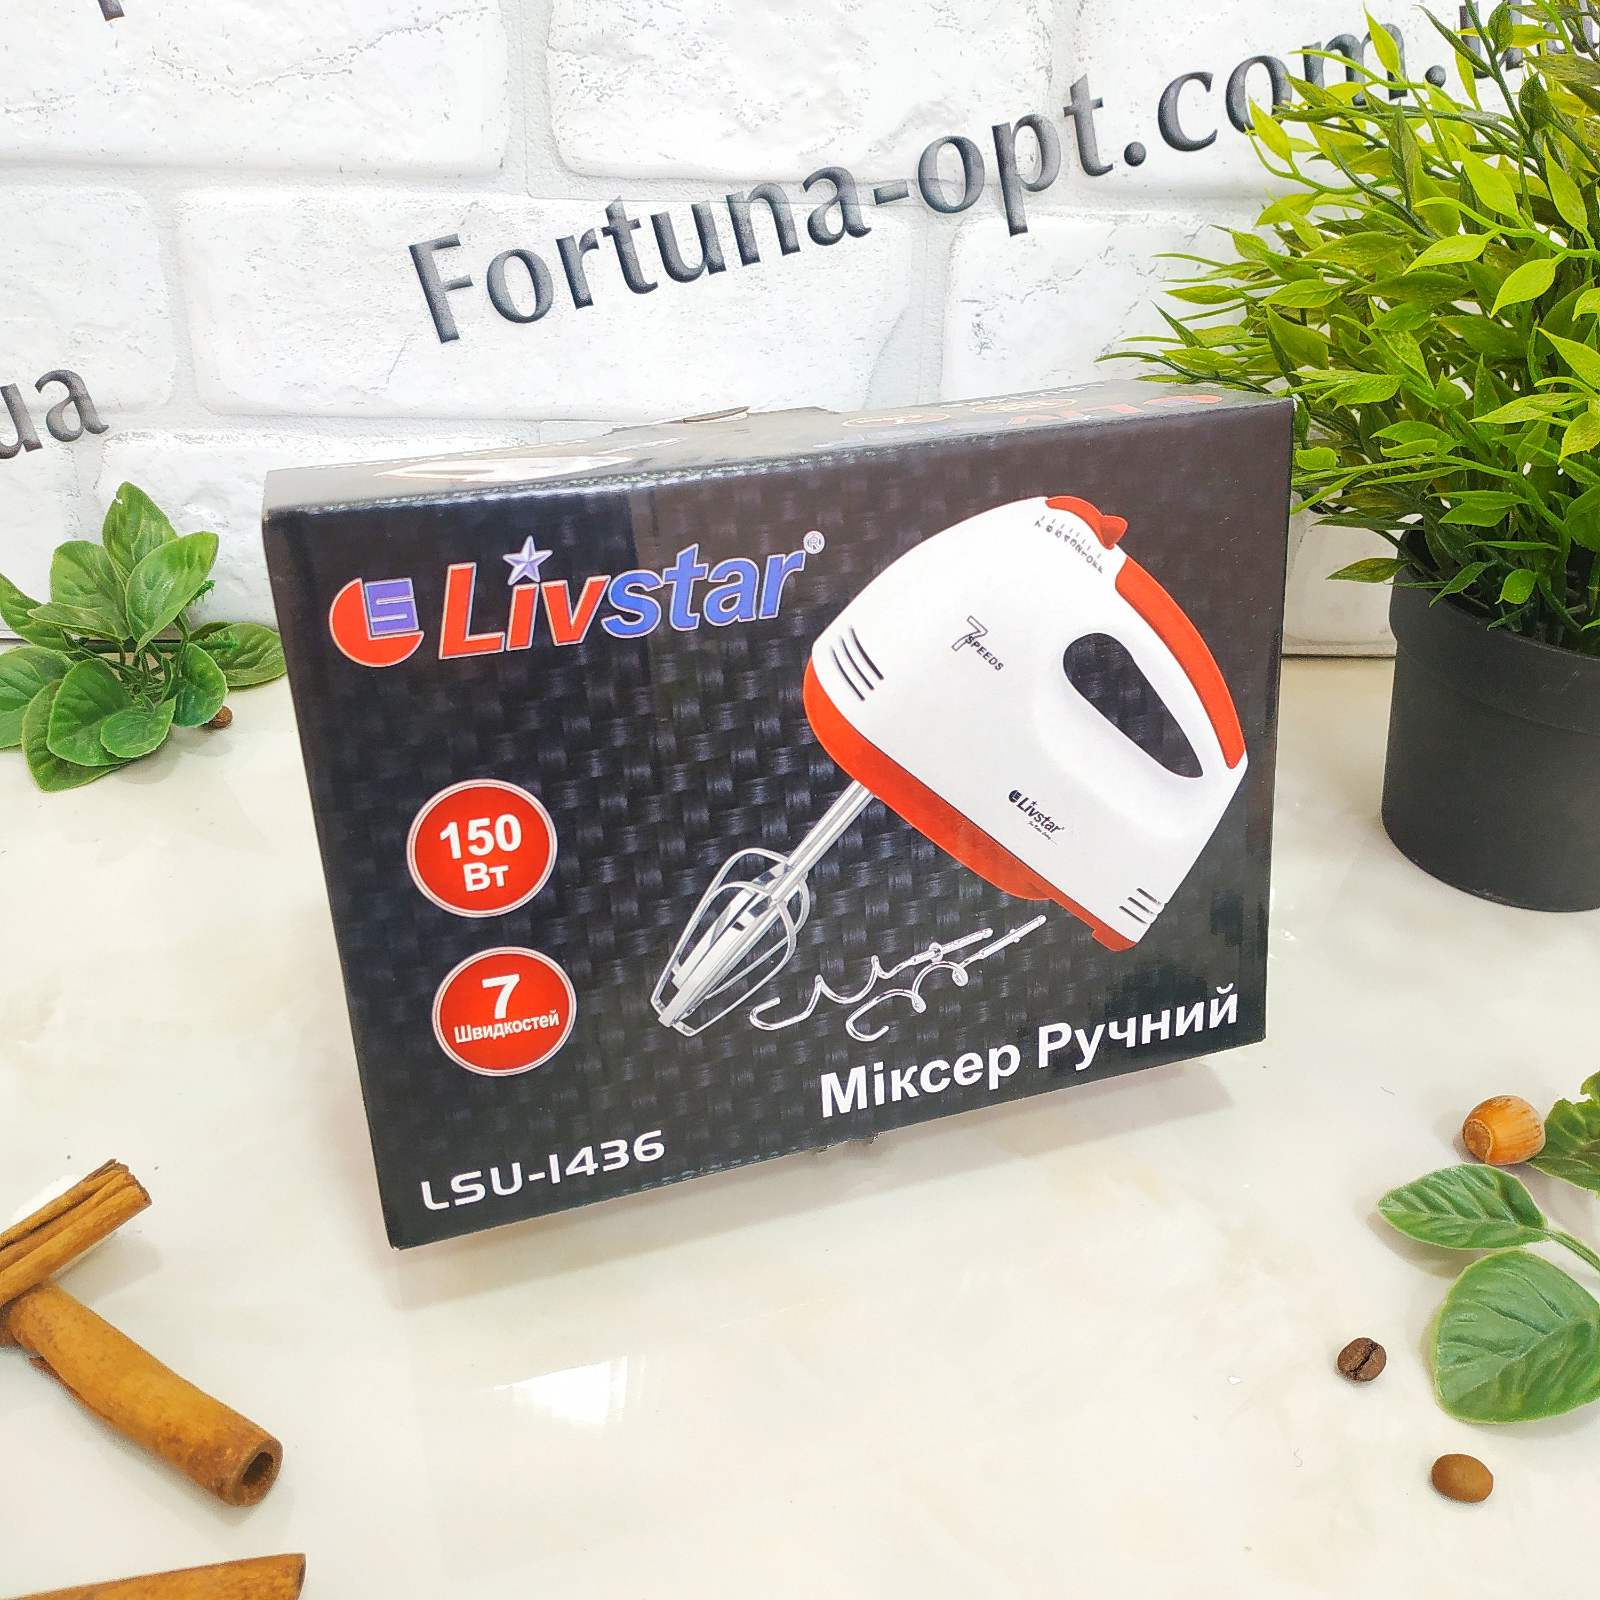 Миксер Livstar LSU - 1436 ✅ базовая цена $9.77 ✔ Опт ✔ Скидки ✔ Заходите! - Интернет-магазин ✅ Фортуна-опт ✅